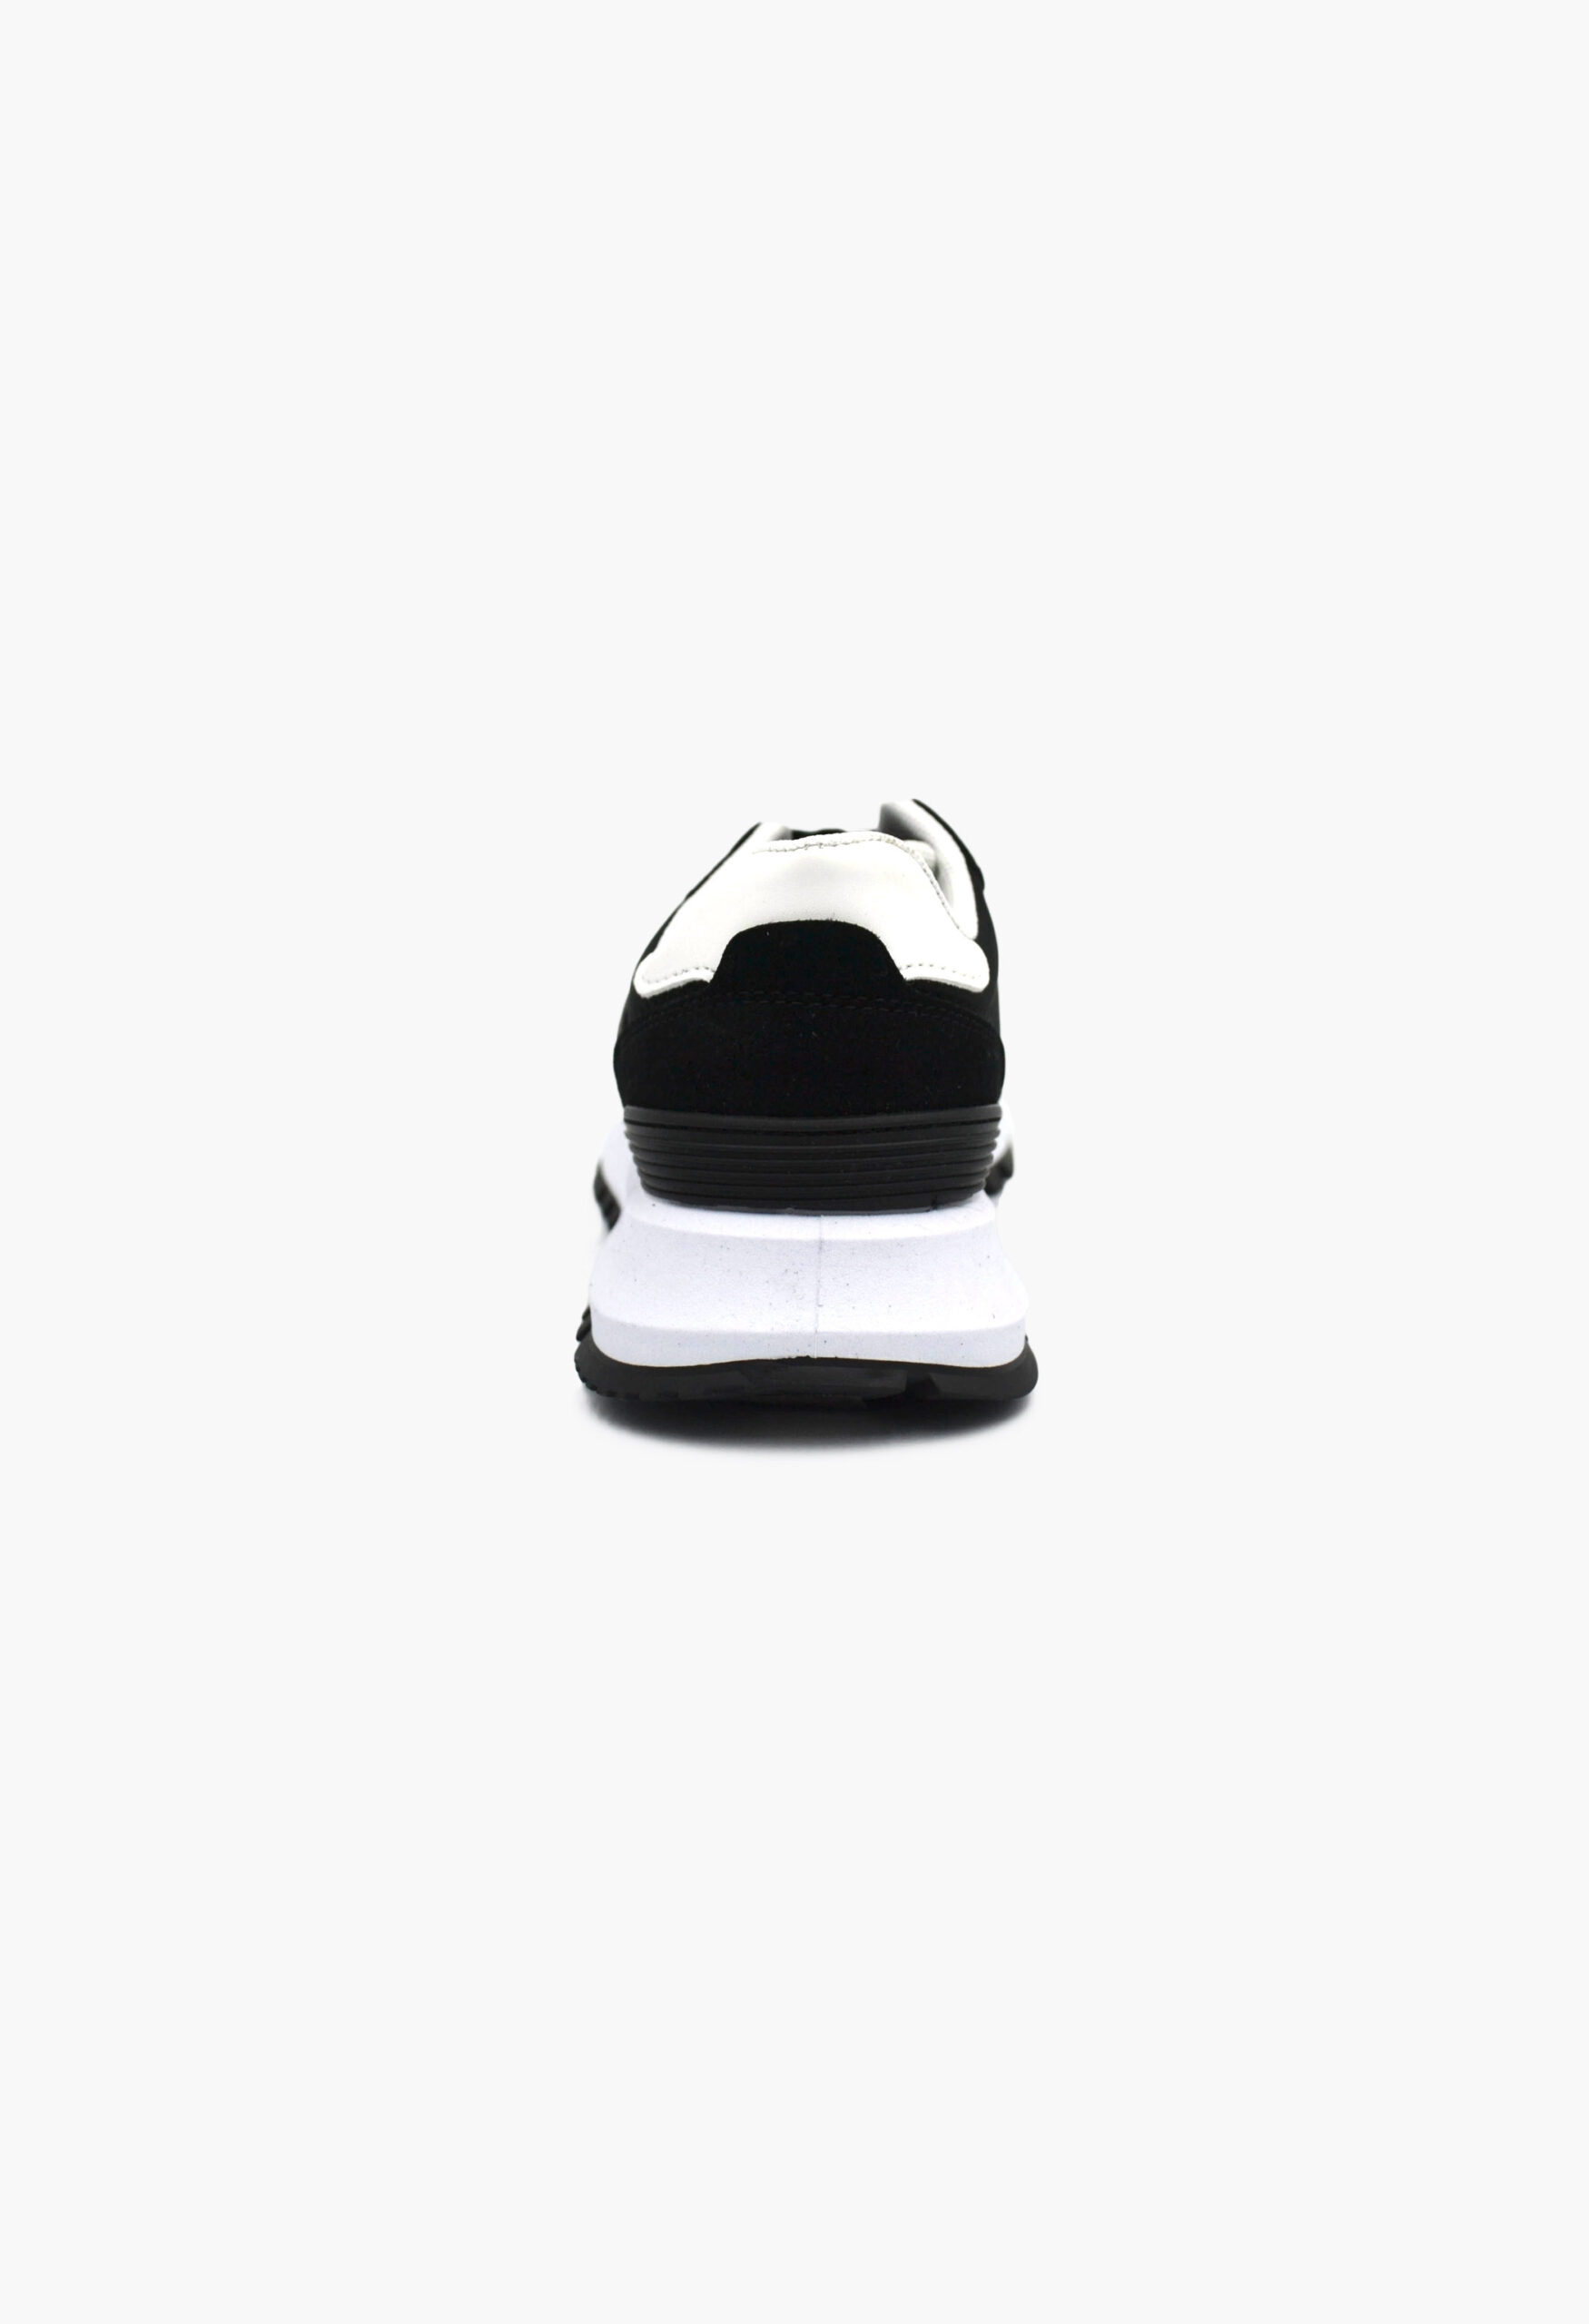 Αθλητικά Παπούτσια για Τρέξιμο Μαύρο / B-948-black Γυναικεία Αθλητικά και Sneakers joya.gr